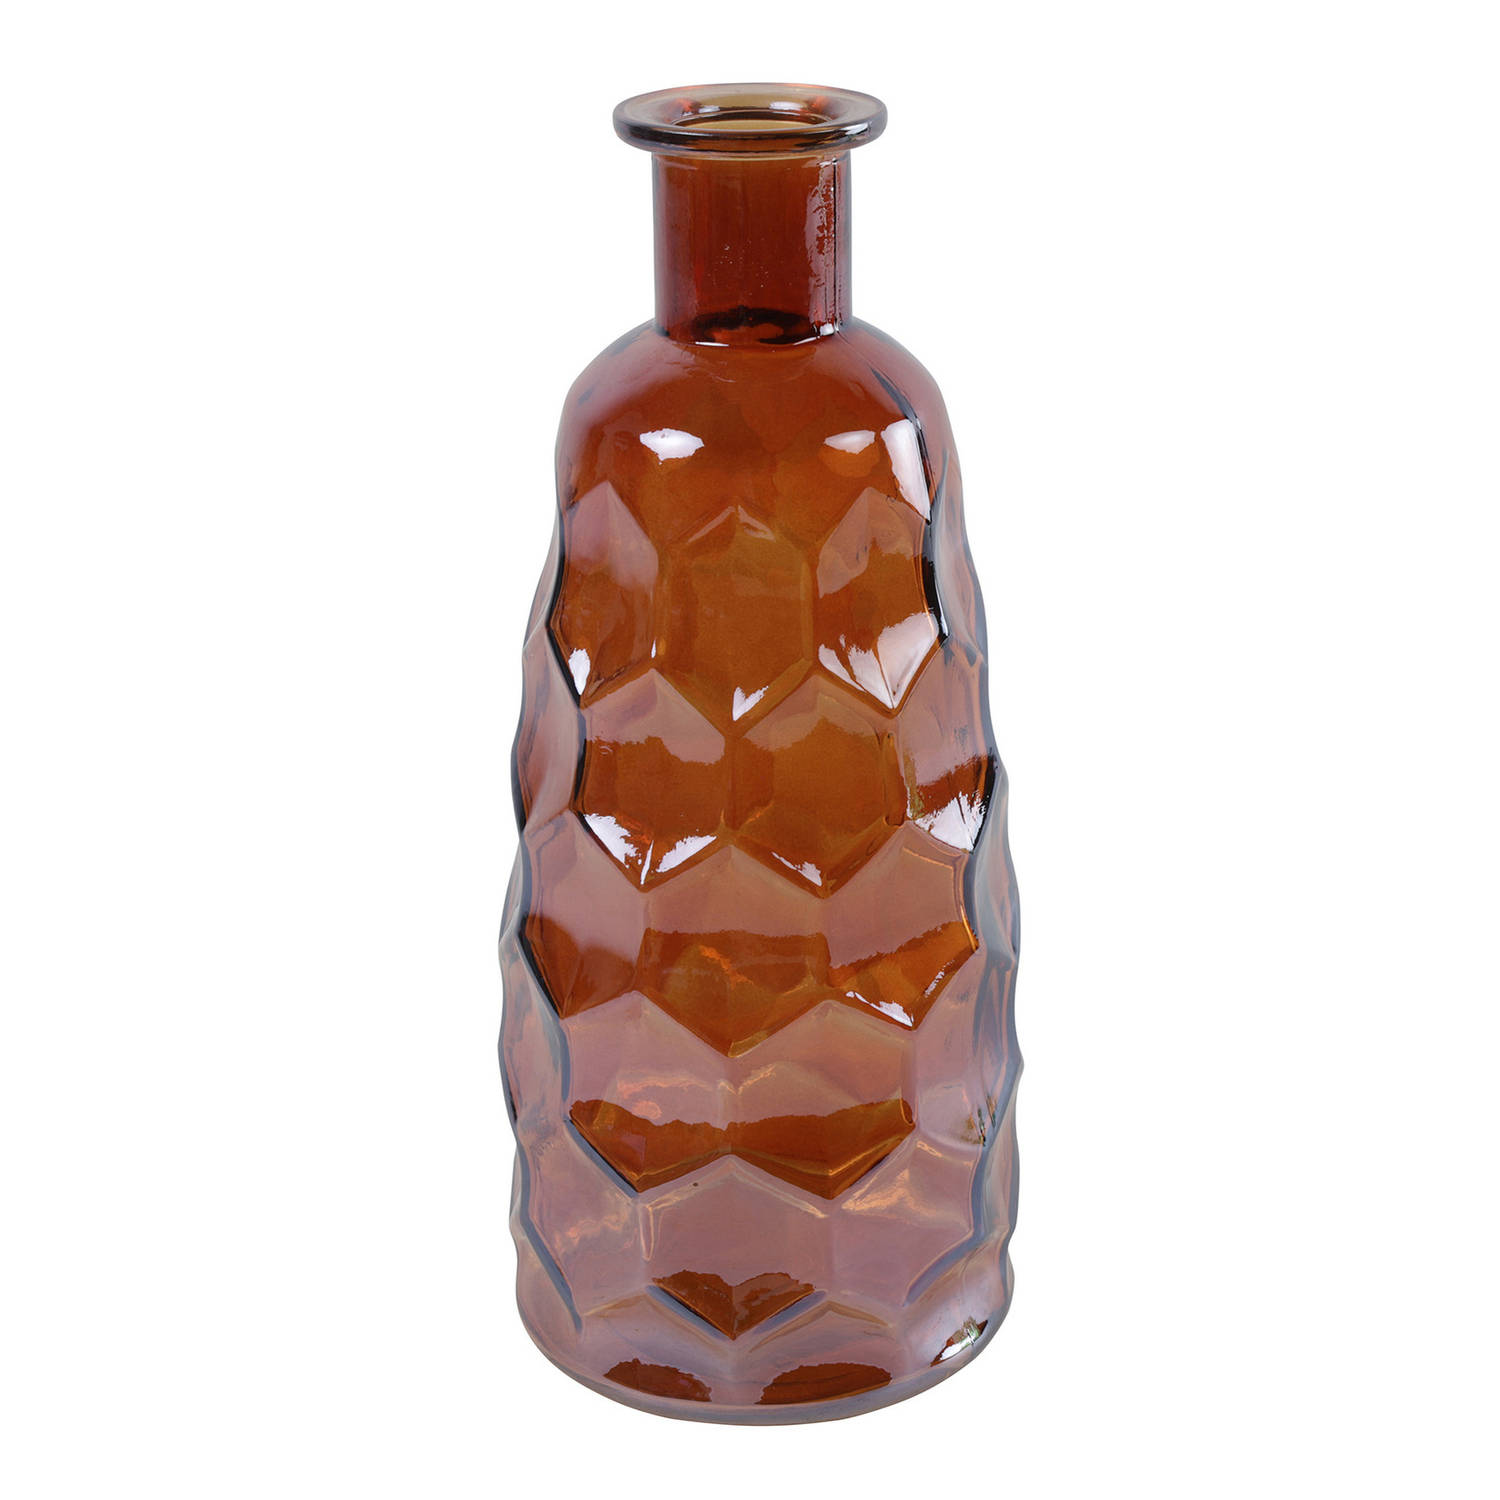 Countryfield Art Deco Bloemenvaas Cognac Bruin Transparant Glas Fles Vorm D12 X H30 Cm Vazen